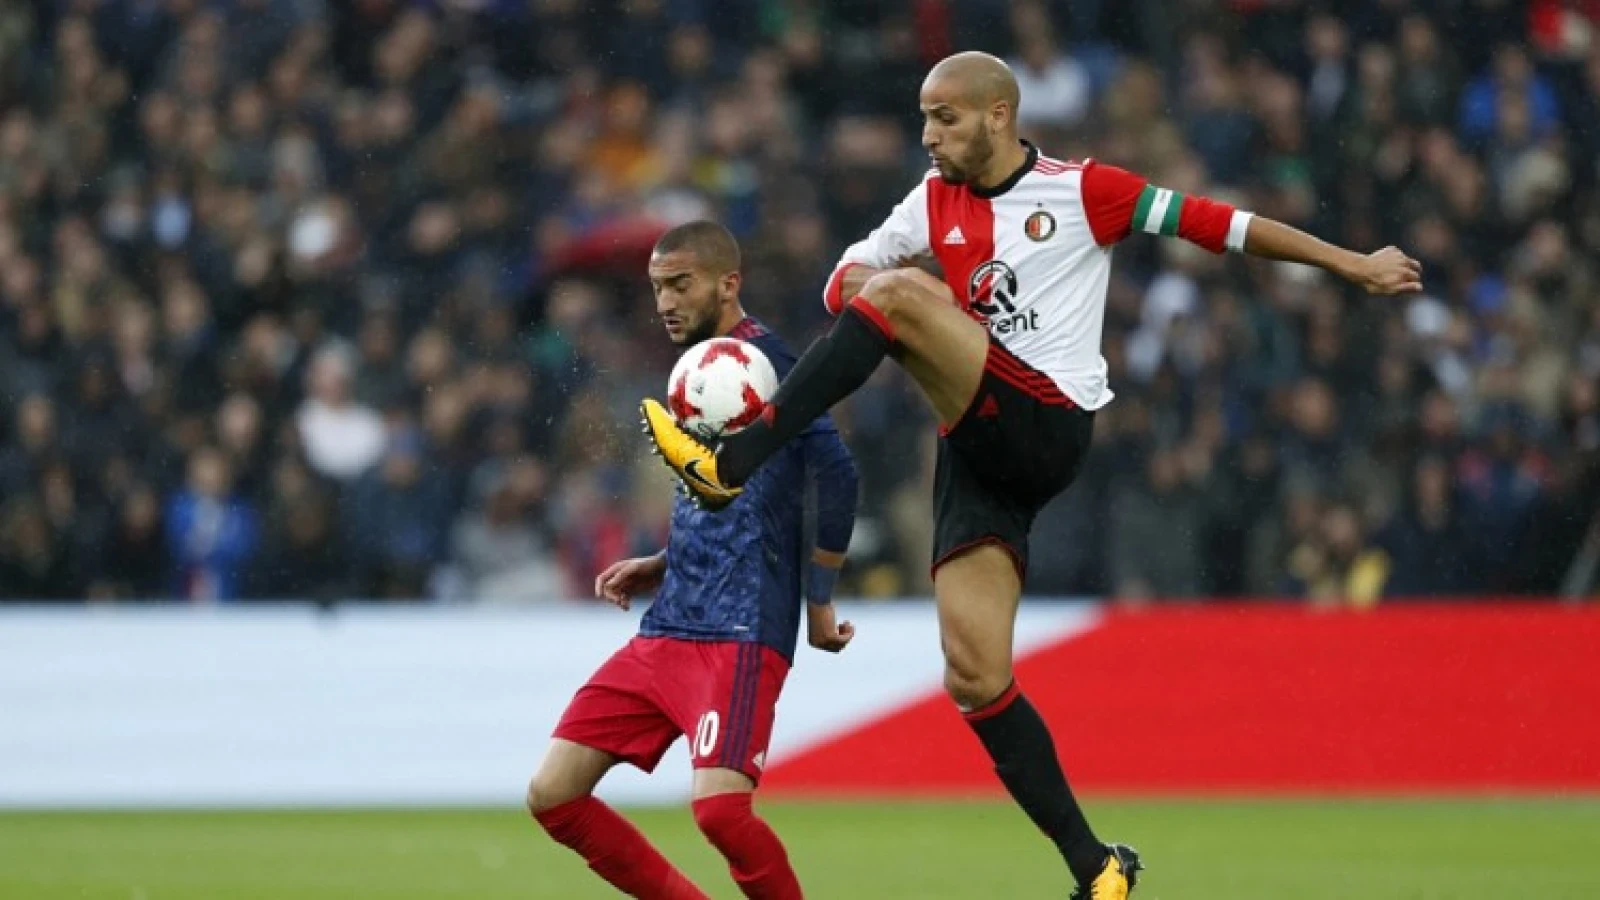 El Ahmadi hard voor Feyenoord: 'We mogen ons zeker schamen'